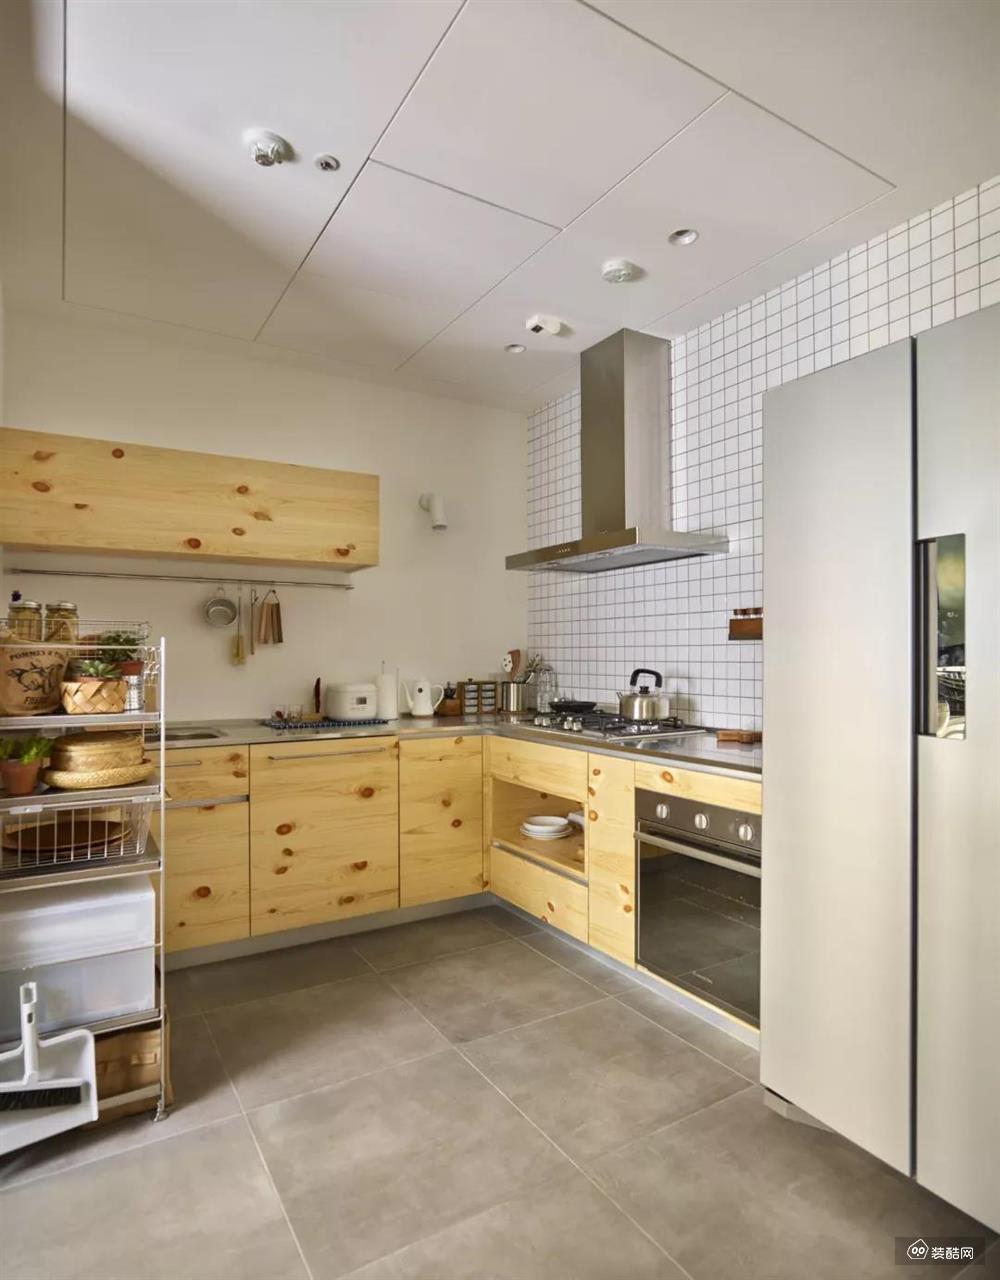 厨房内部做了L型的橱柜，还和生活阳台相连。水泥质感的地砖搭配原木风的橱柜，在简洁轻松当中有着质朴乡村的感觉。